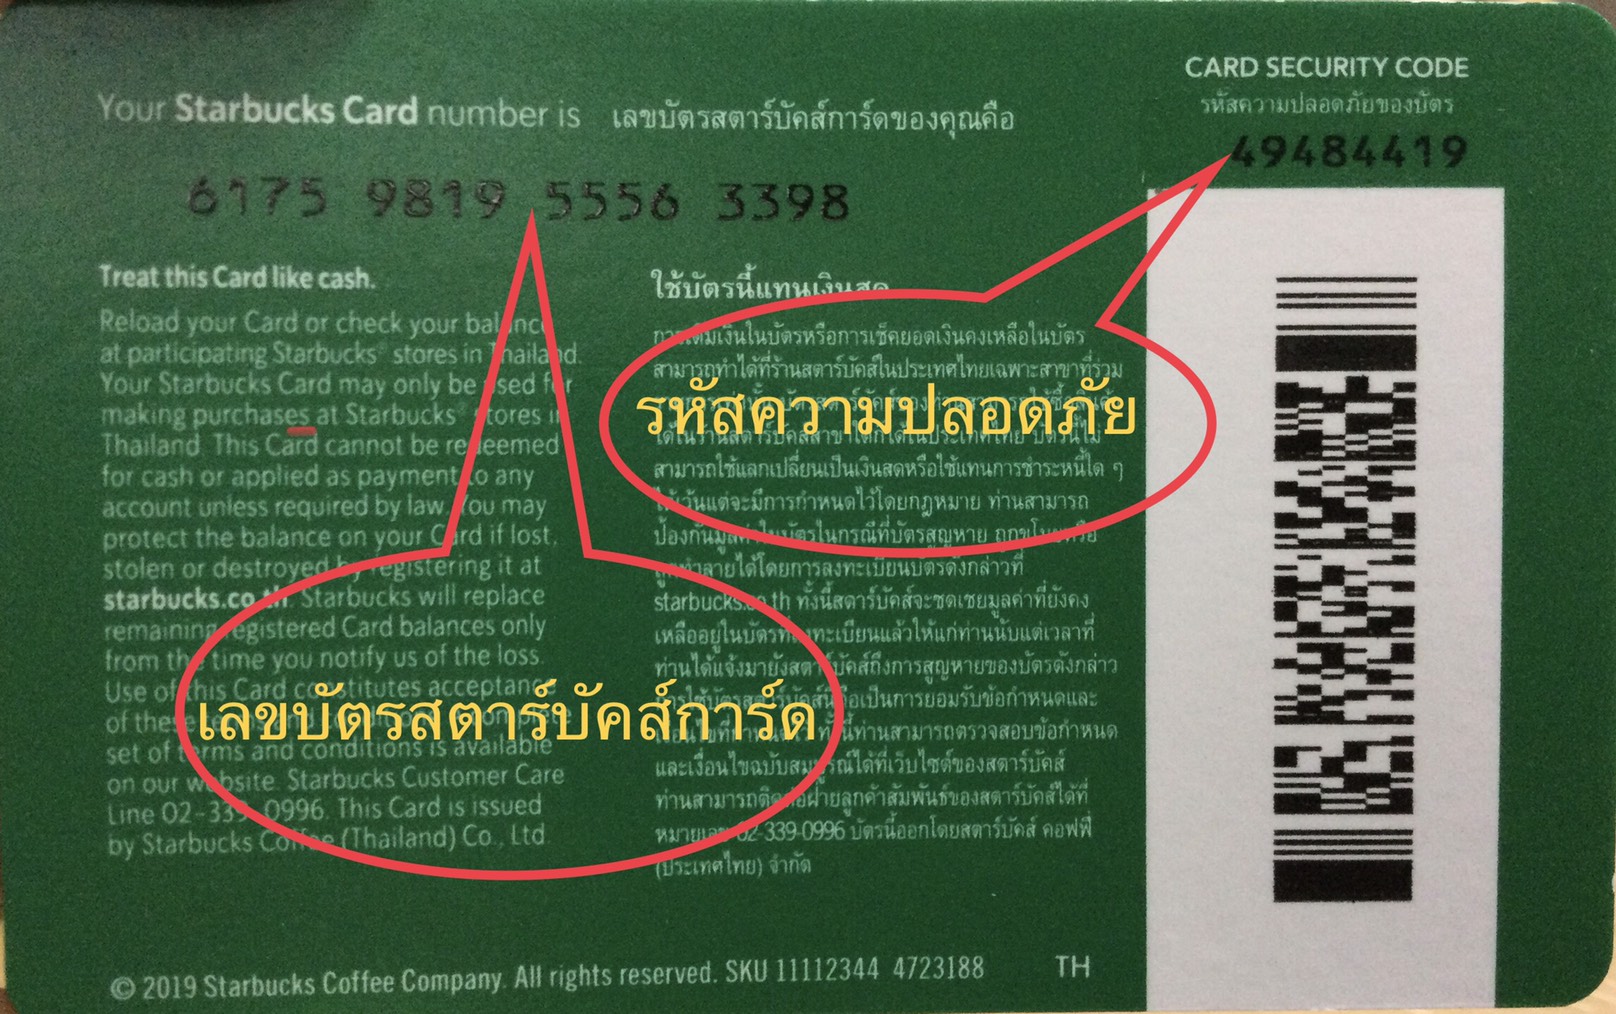 ข้อมูลเพิ่มเติมของ Starbucks card มูลค่า 500 บาท ((ส่งรหัสทางแชทเท่านั้น ))